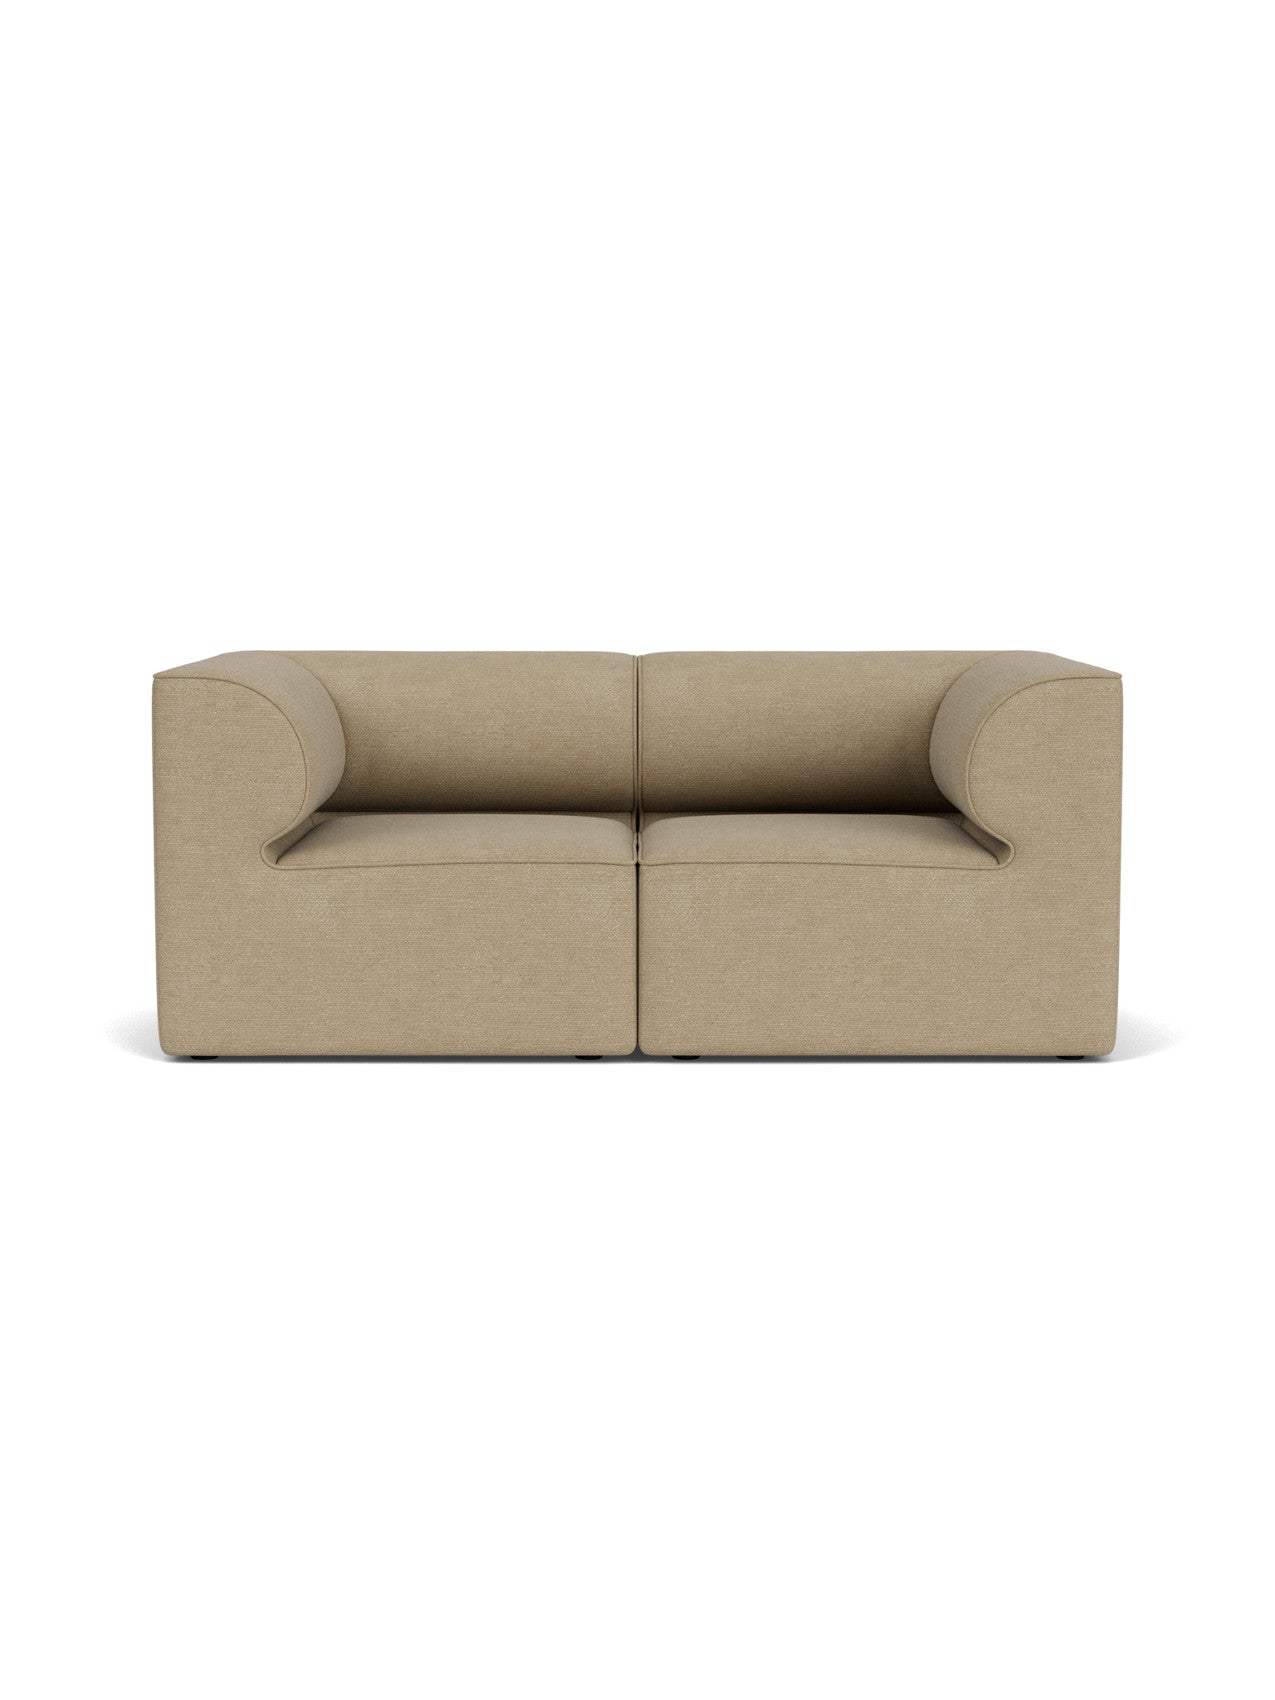 Eave Modular Sofa, 86, 2 Seater, Configuration 1